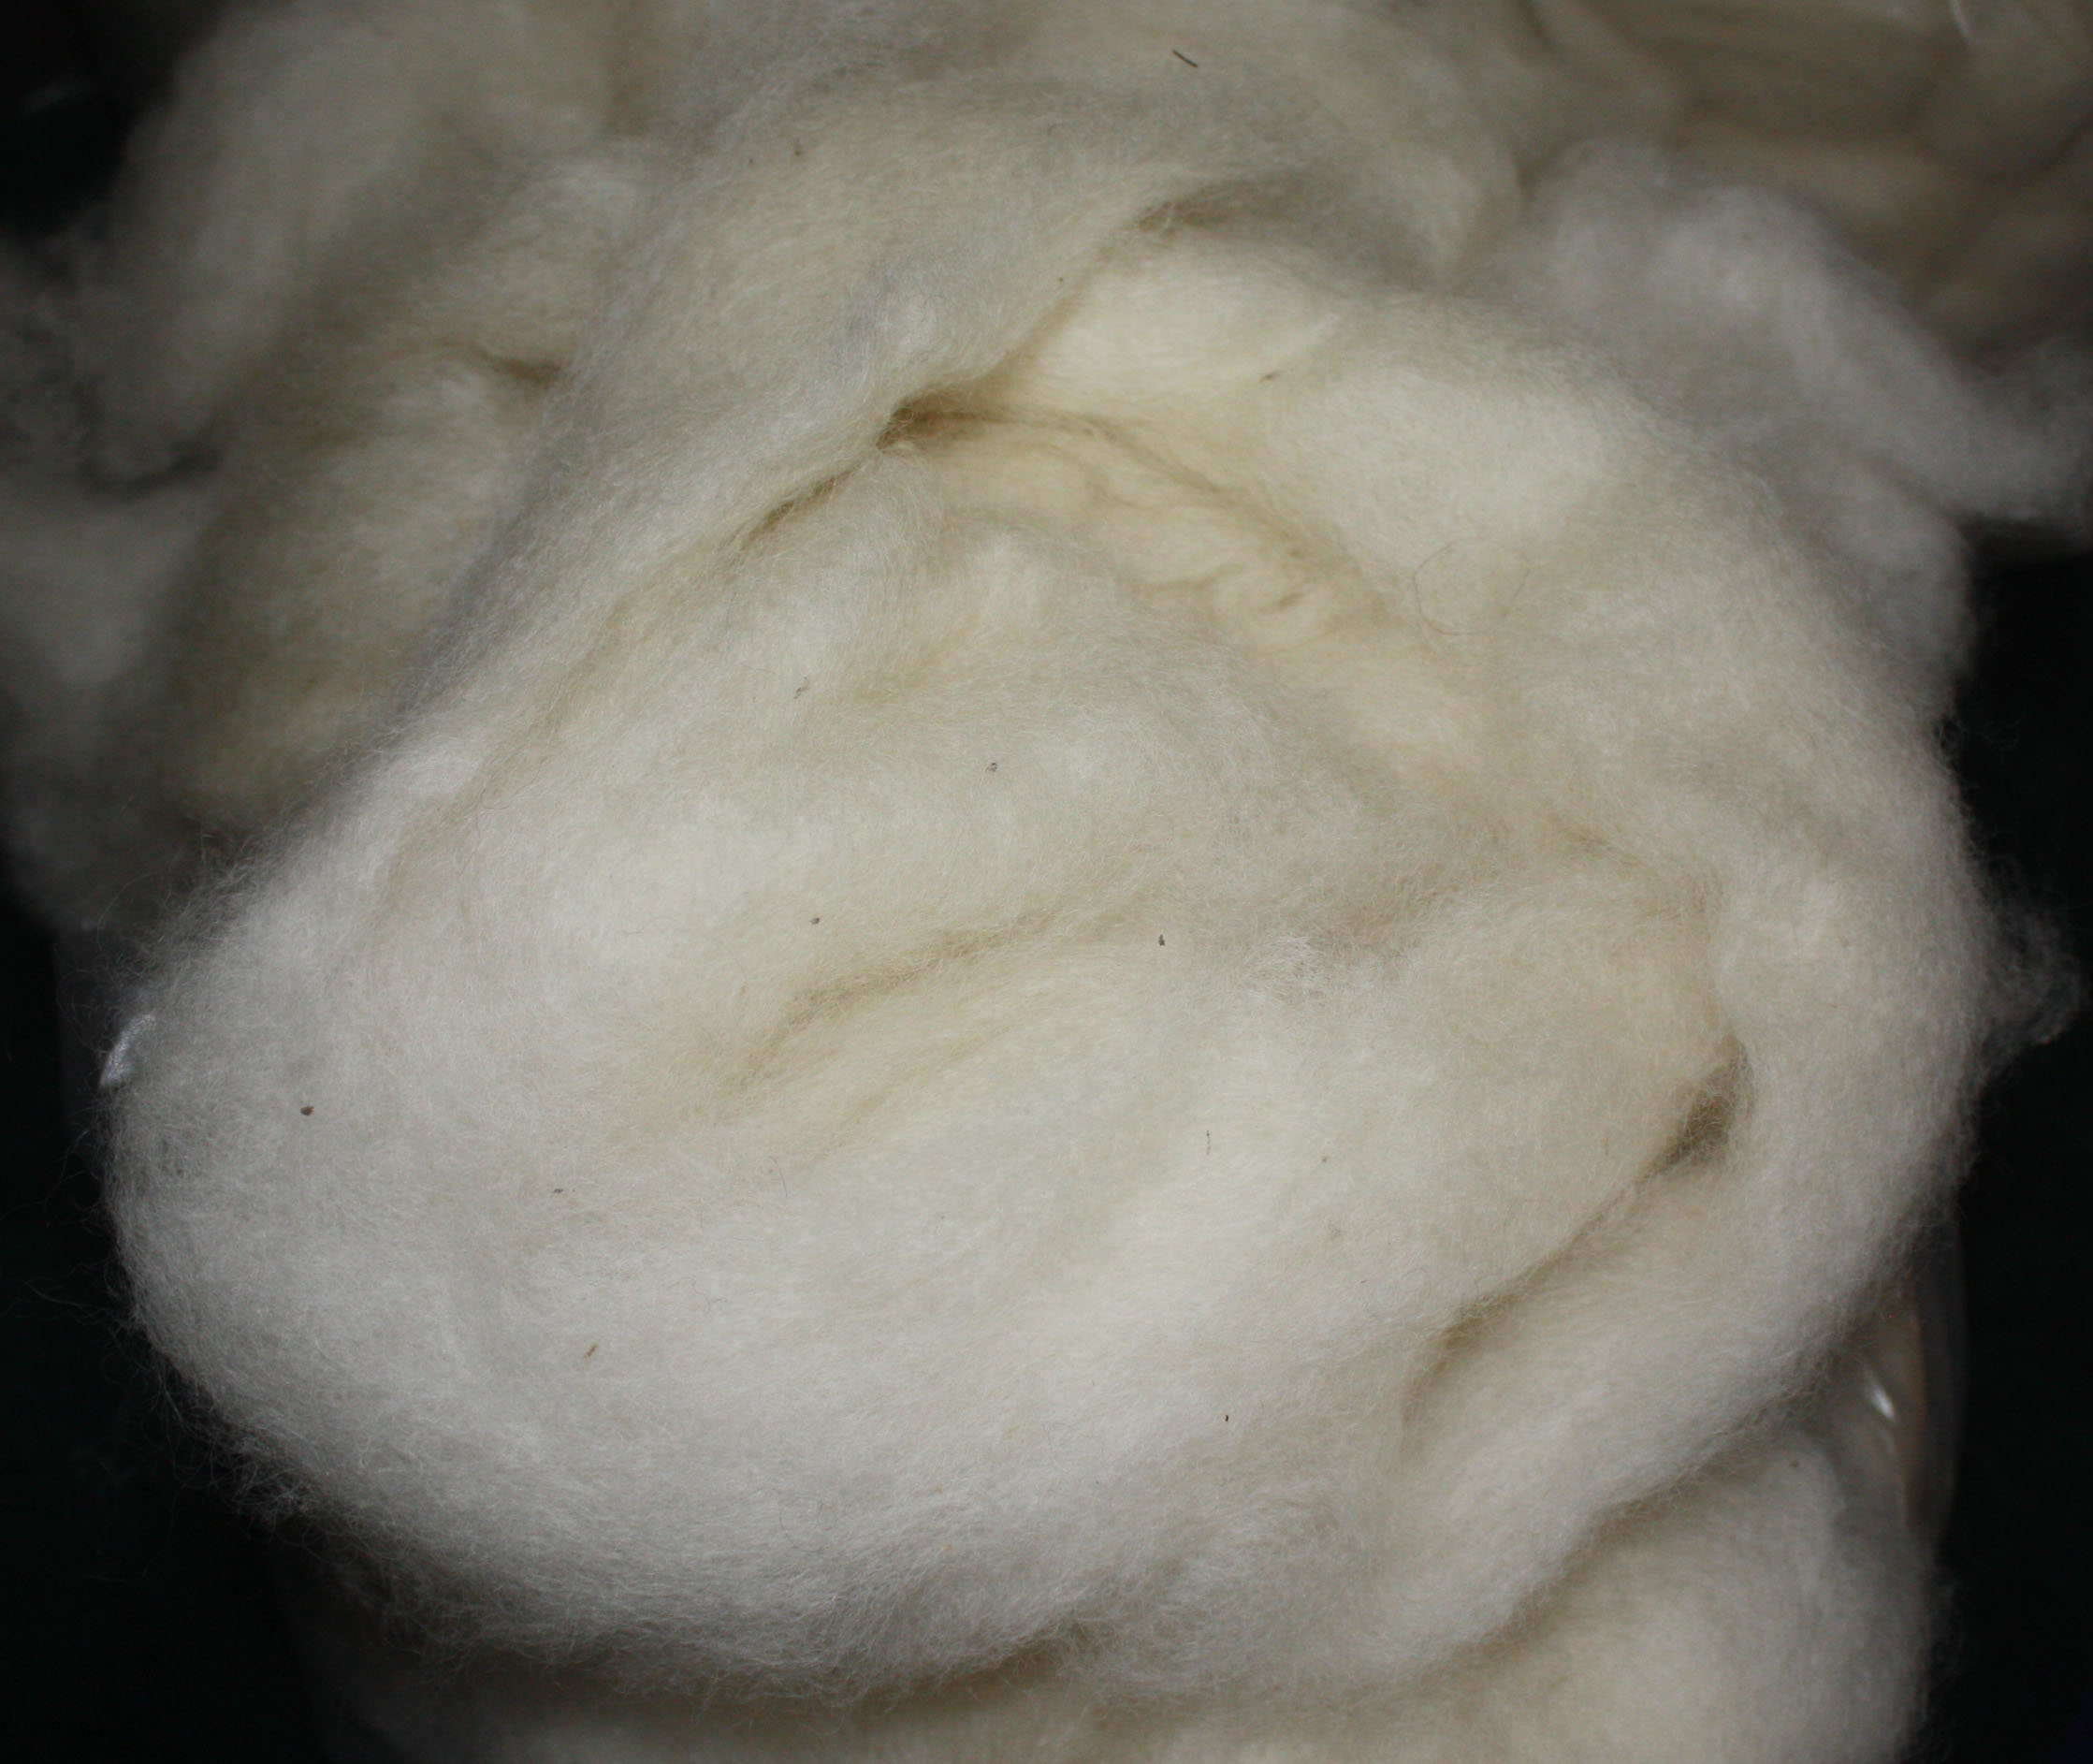 Wool Roving - 15. Irish Moss